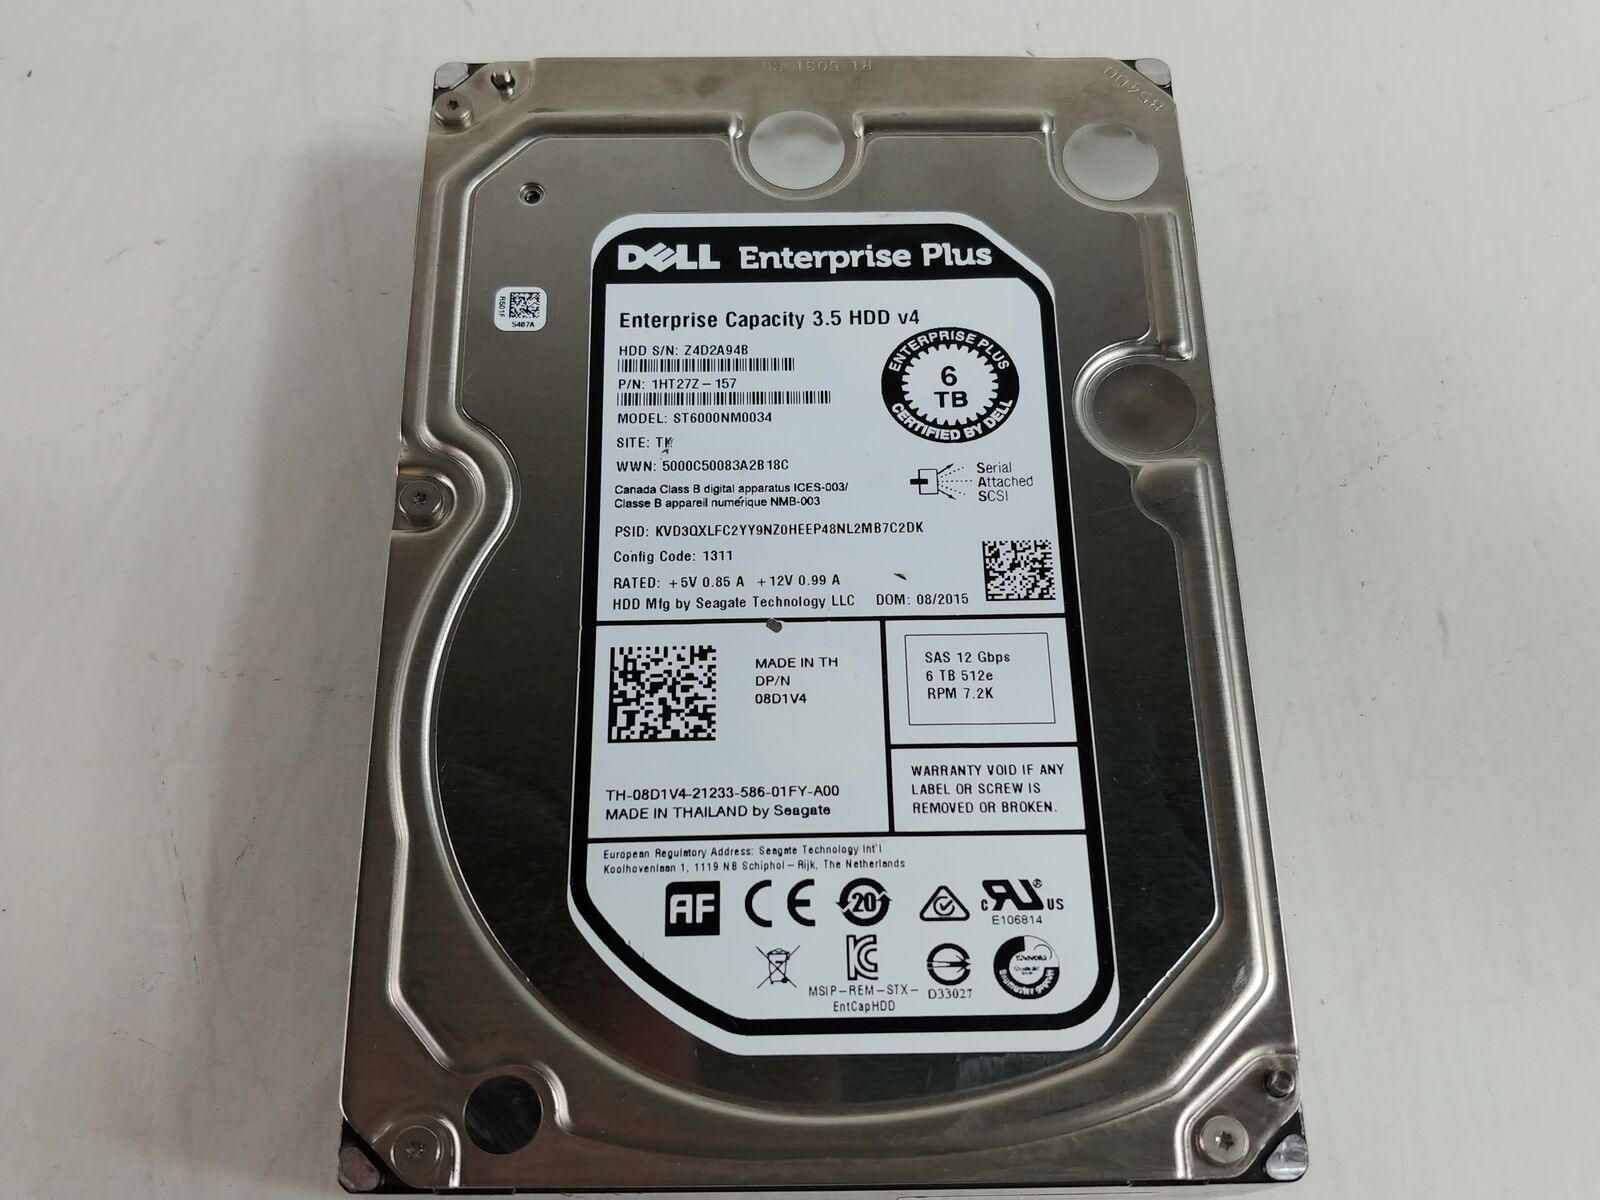 Seagate Dell Enterprise Plus ST6000NM0034 6 TB SAS 3 3.5 in Hard Drive